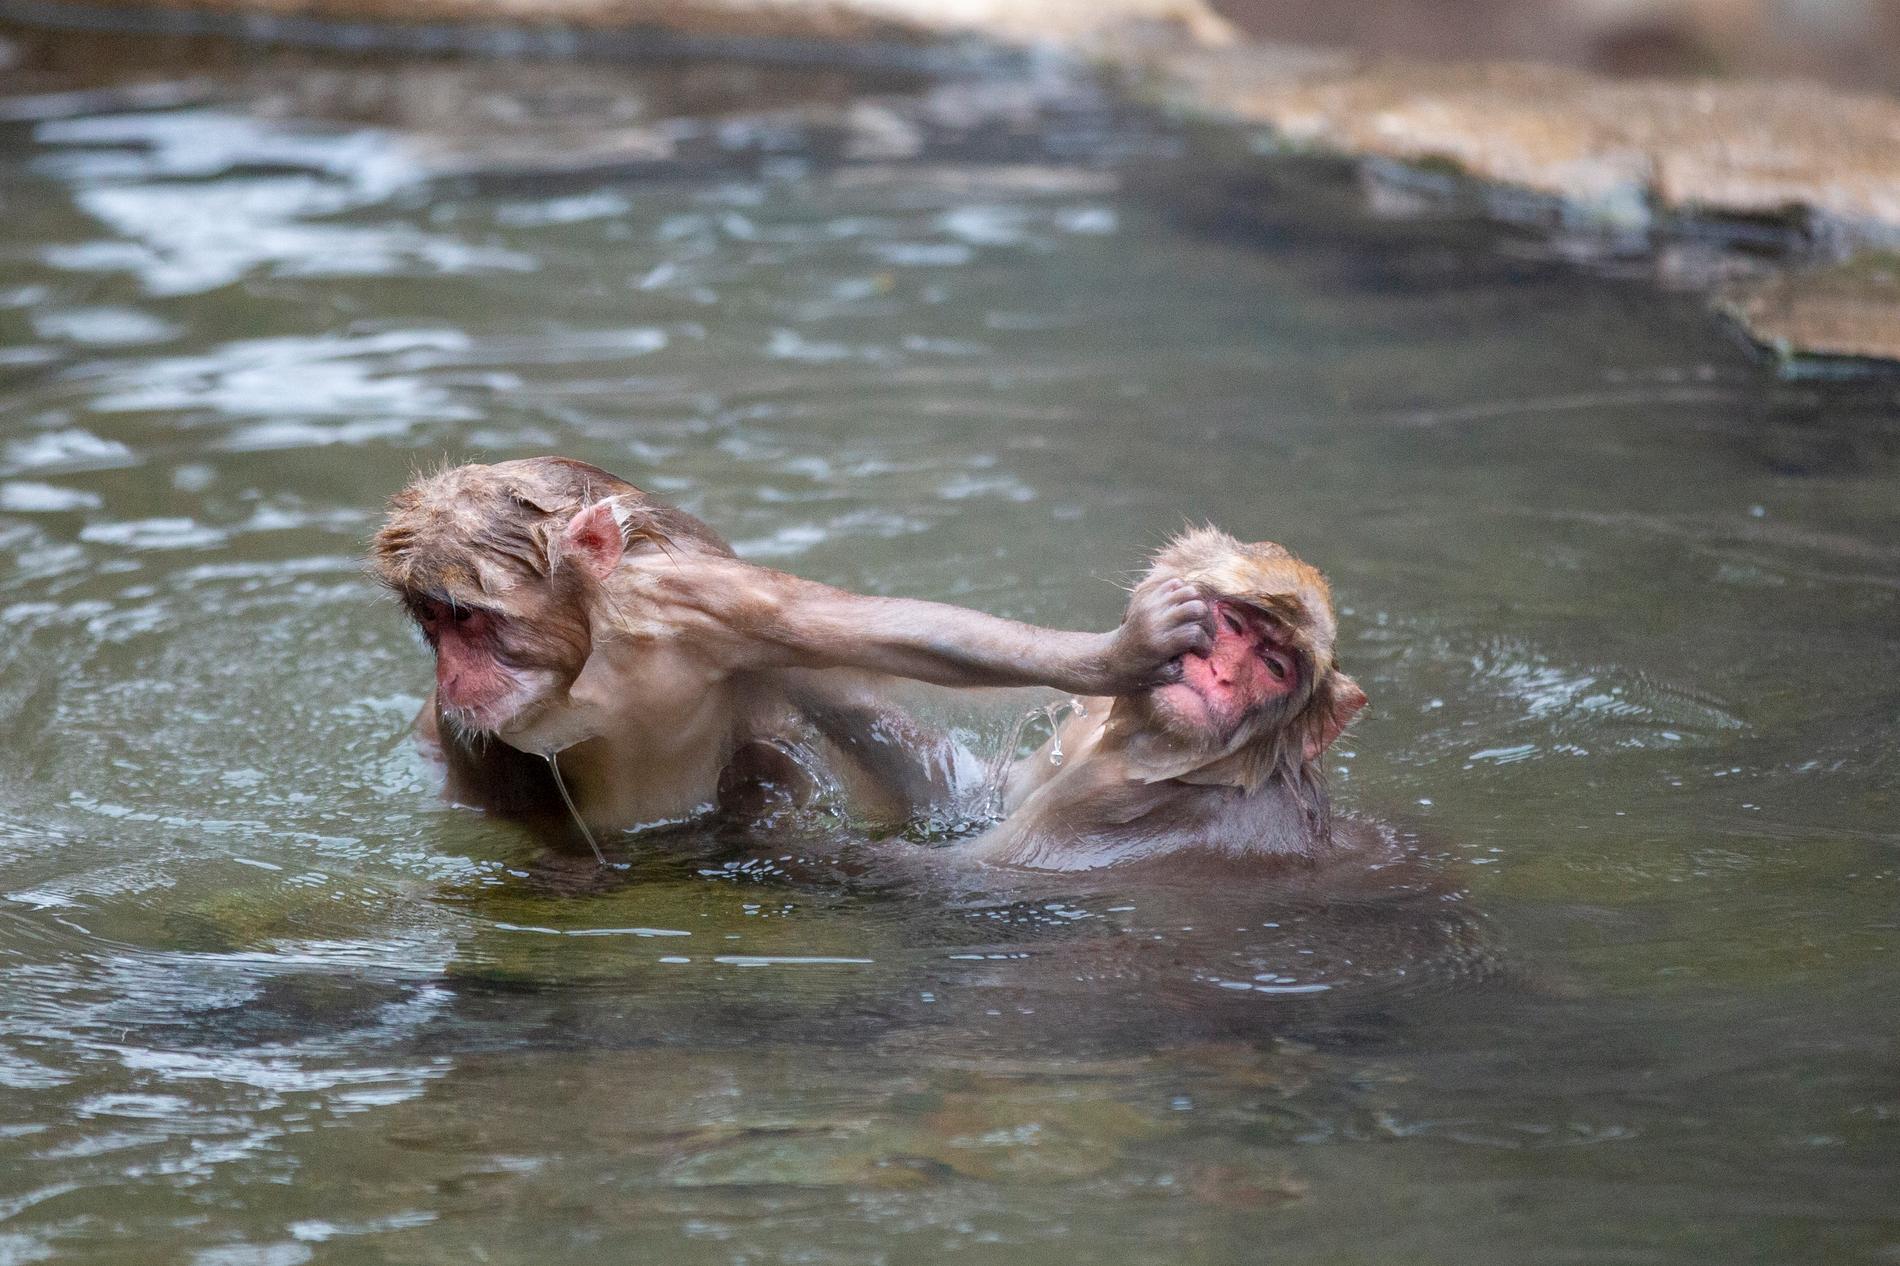 Stressnivåerna hos makakerna sjunker markant efter ett dopp, enligt en studie. Bild från mars 2021.